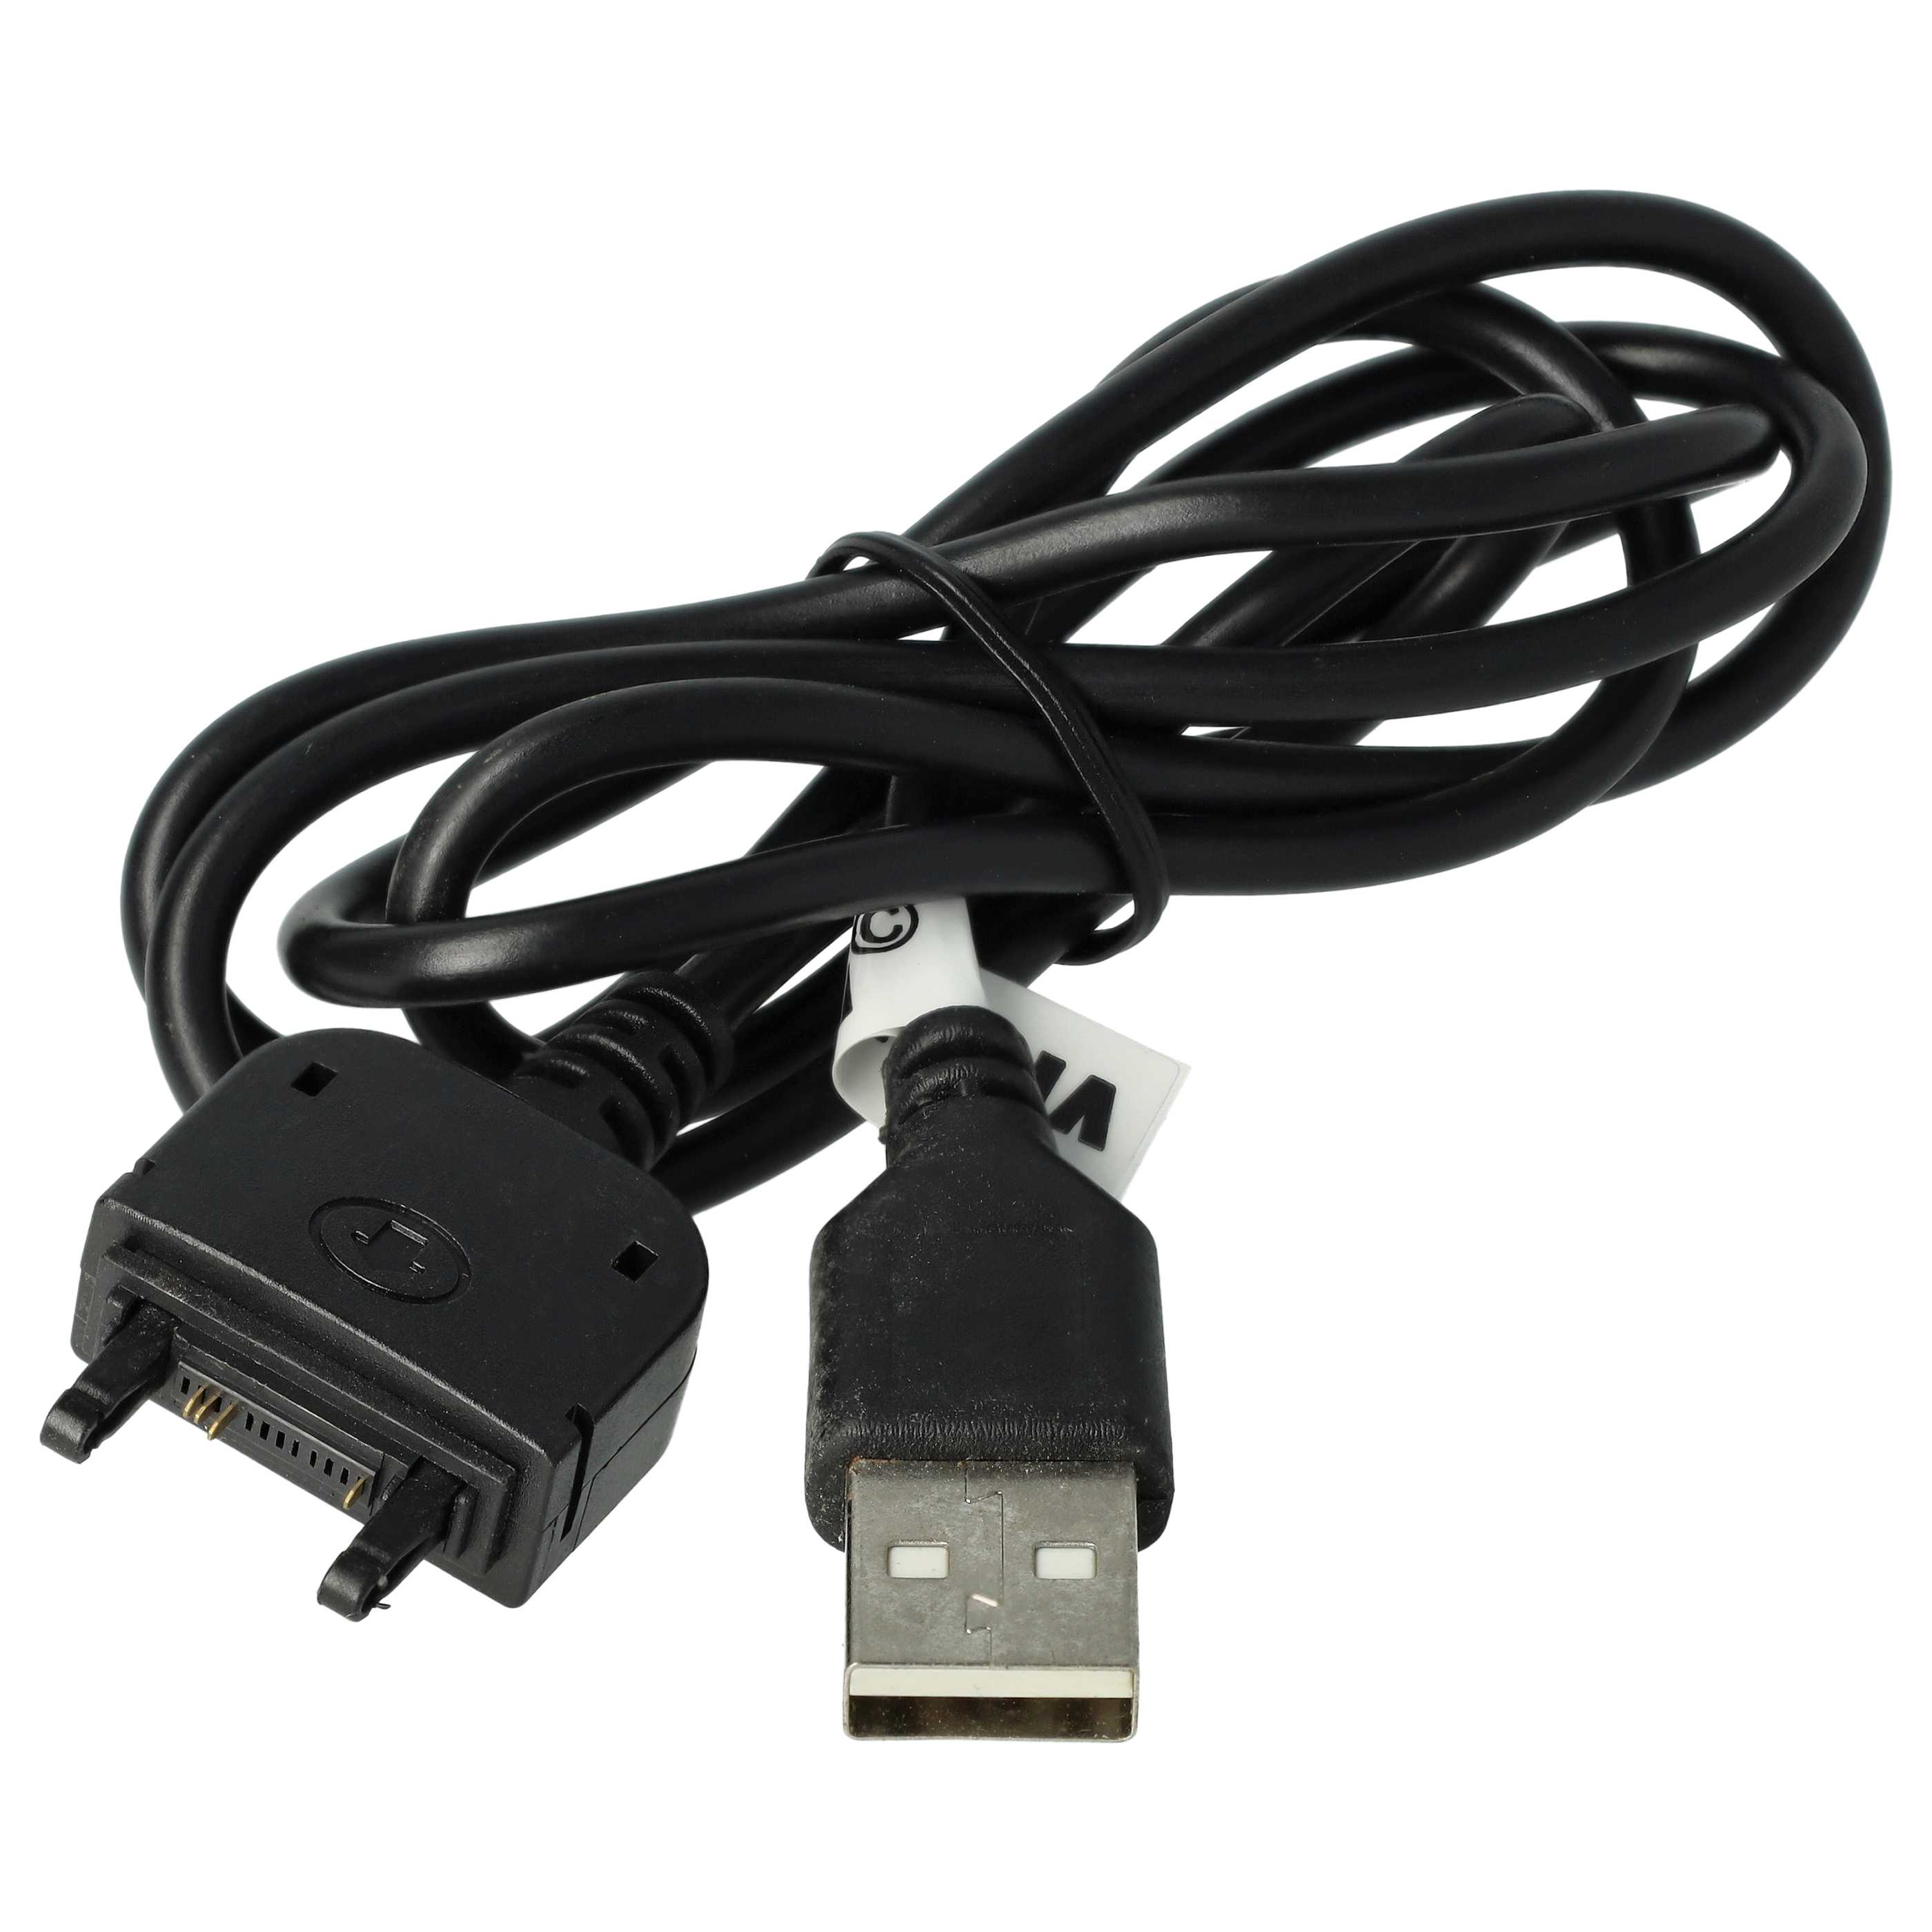 USB Datenkabel als Ersatz für Sony DCU-60 für Sony Ericsson Handy